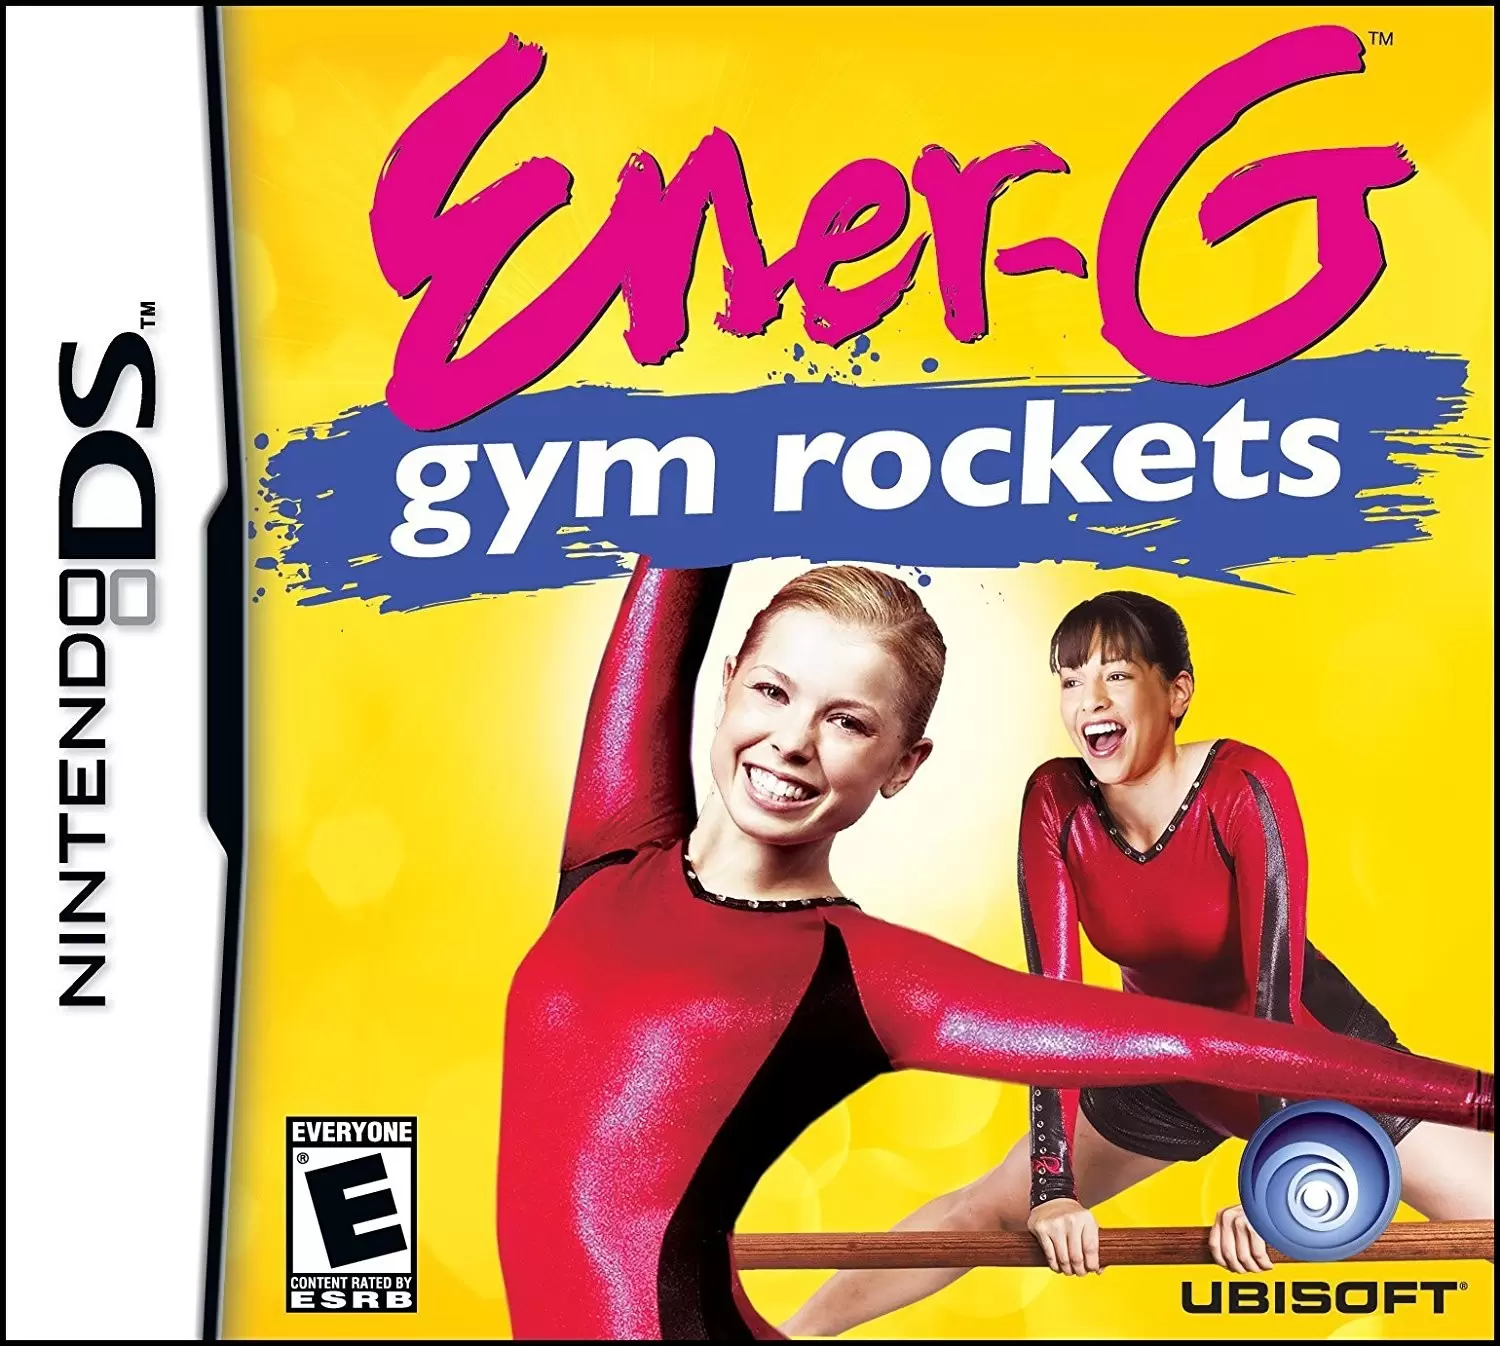 Nintendo DS Games - Ener-G Gym Rockets